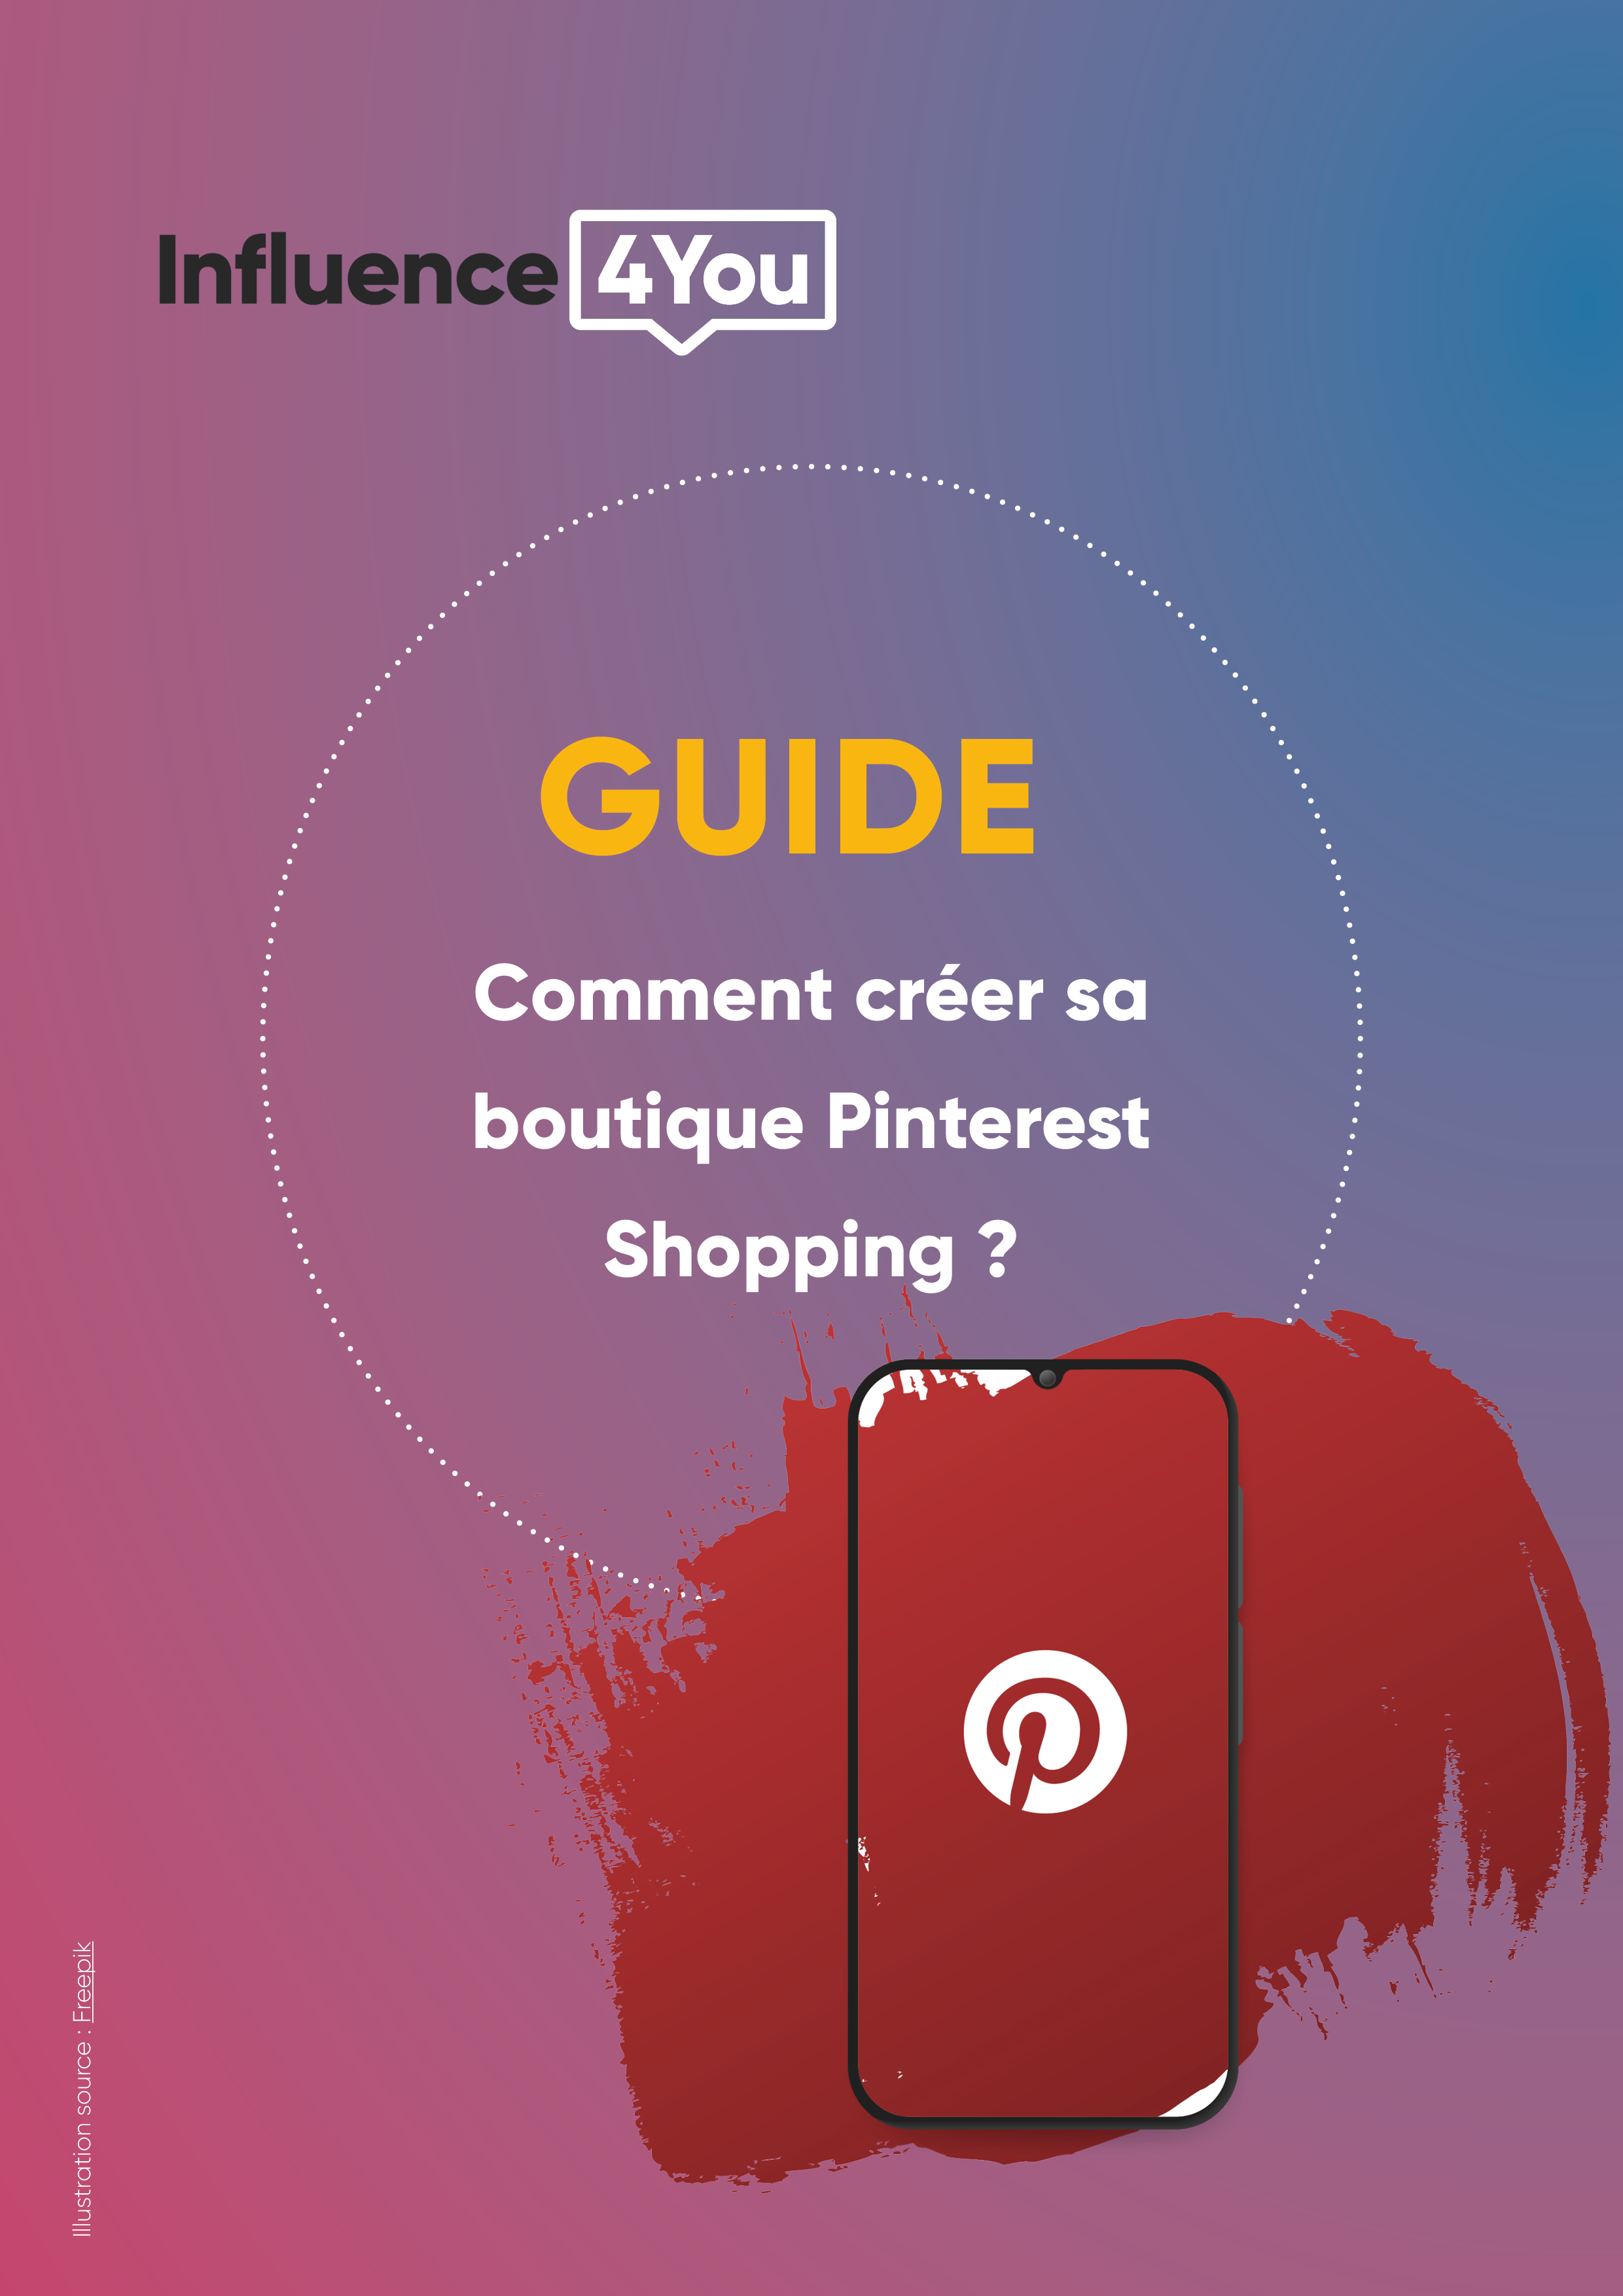 Guide - Comment créer sa boutique Pinterest Shopping